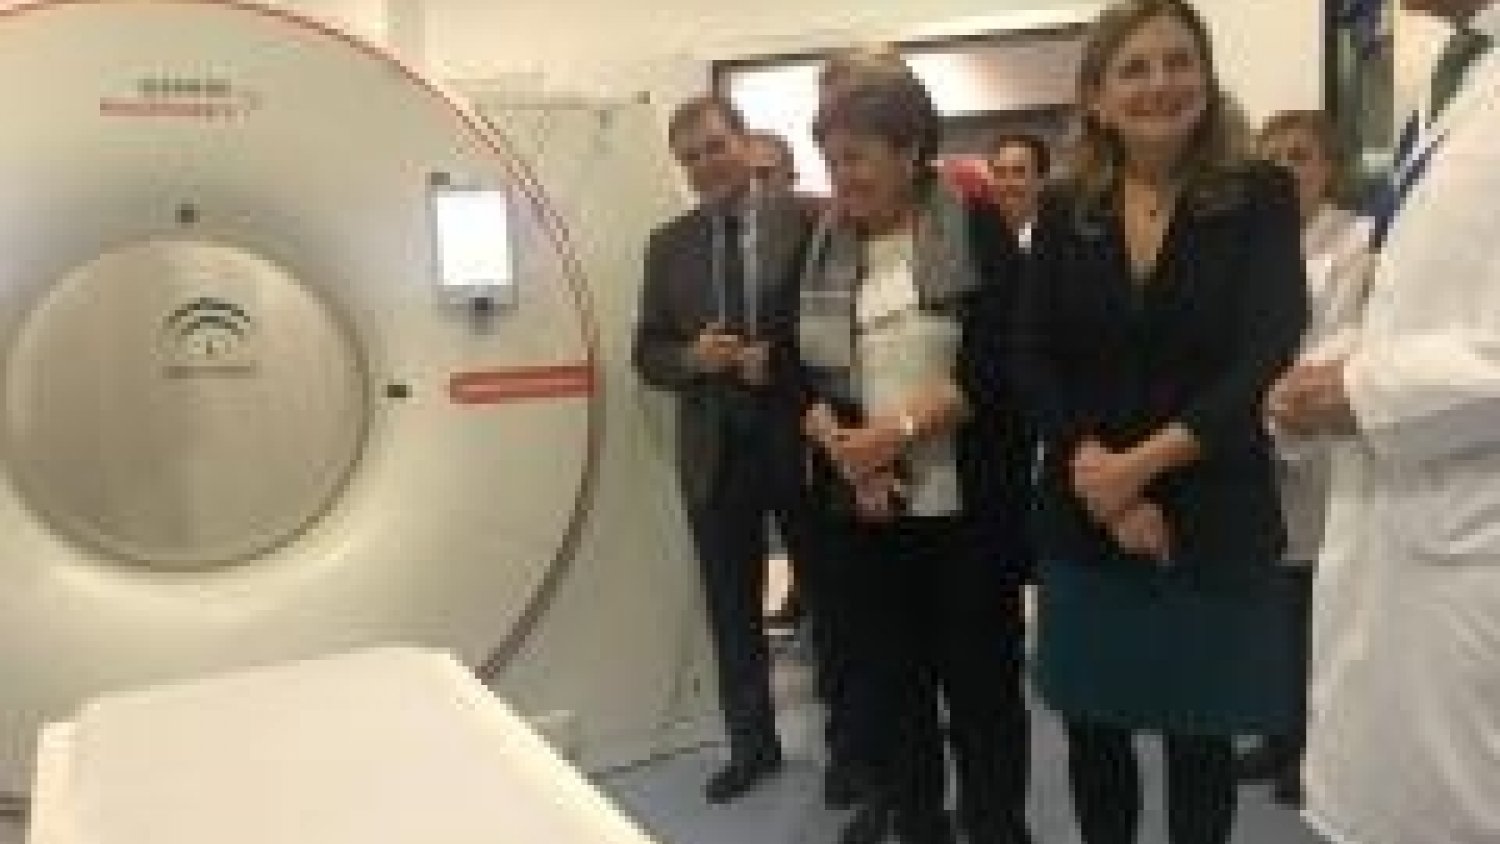 Mañana entra en funcionamiento una nueva Resonancia Magnética en el Hospital Virgen de la Victoria